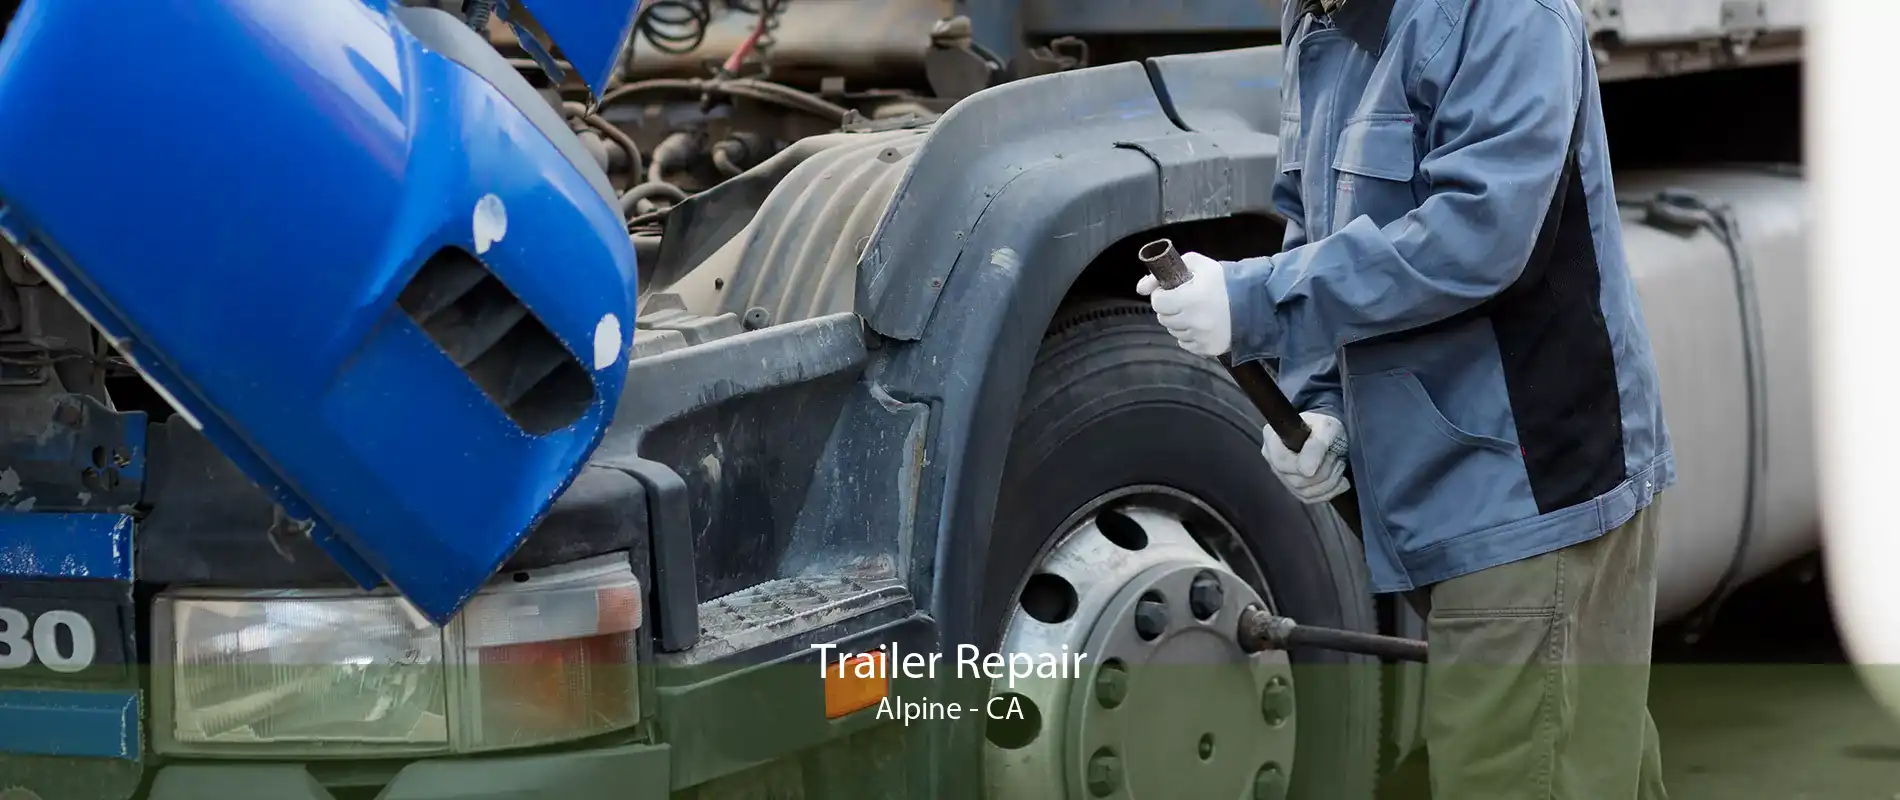 Trailer Repair Alpine - CA